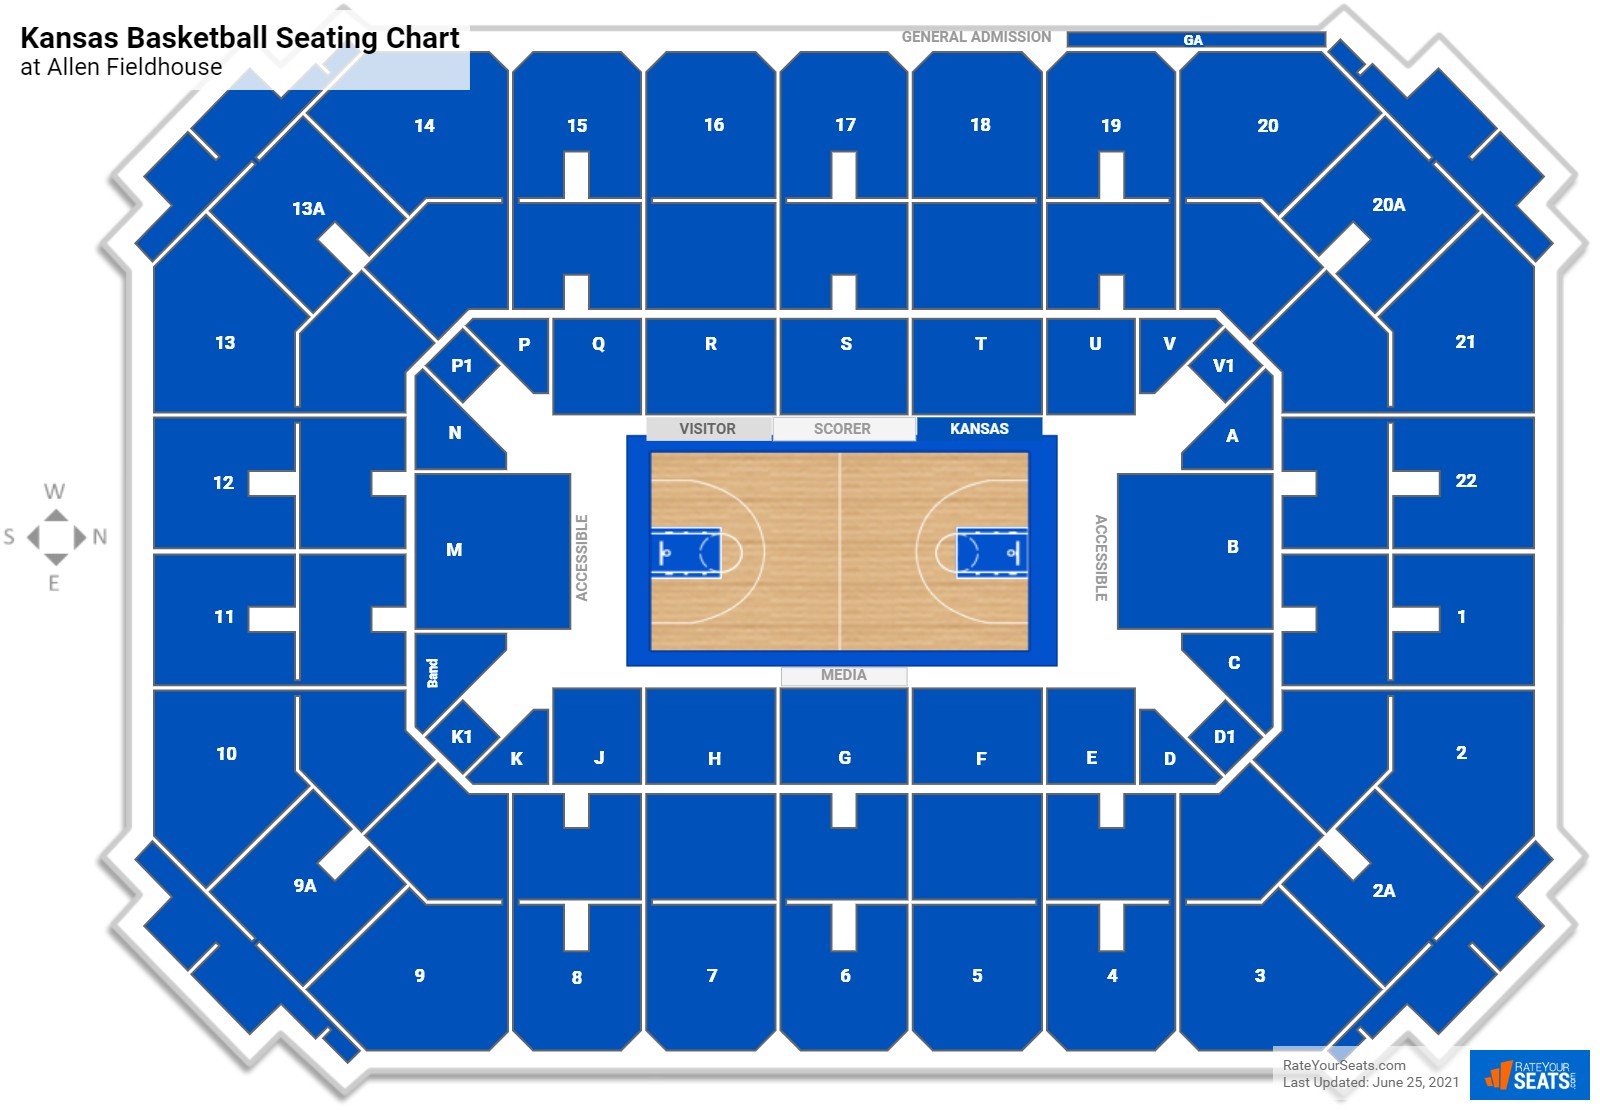 Kansas Jayhawks Seating Chart at Allen Fieldhouse